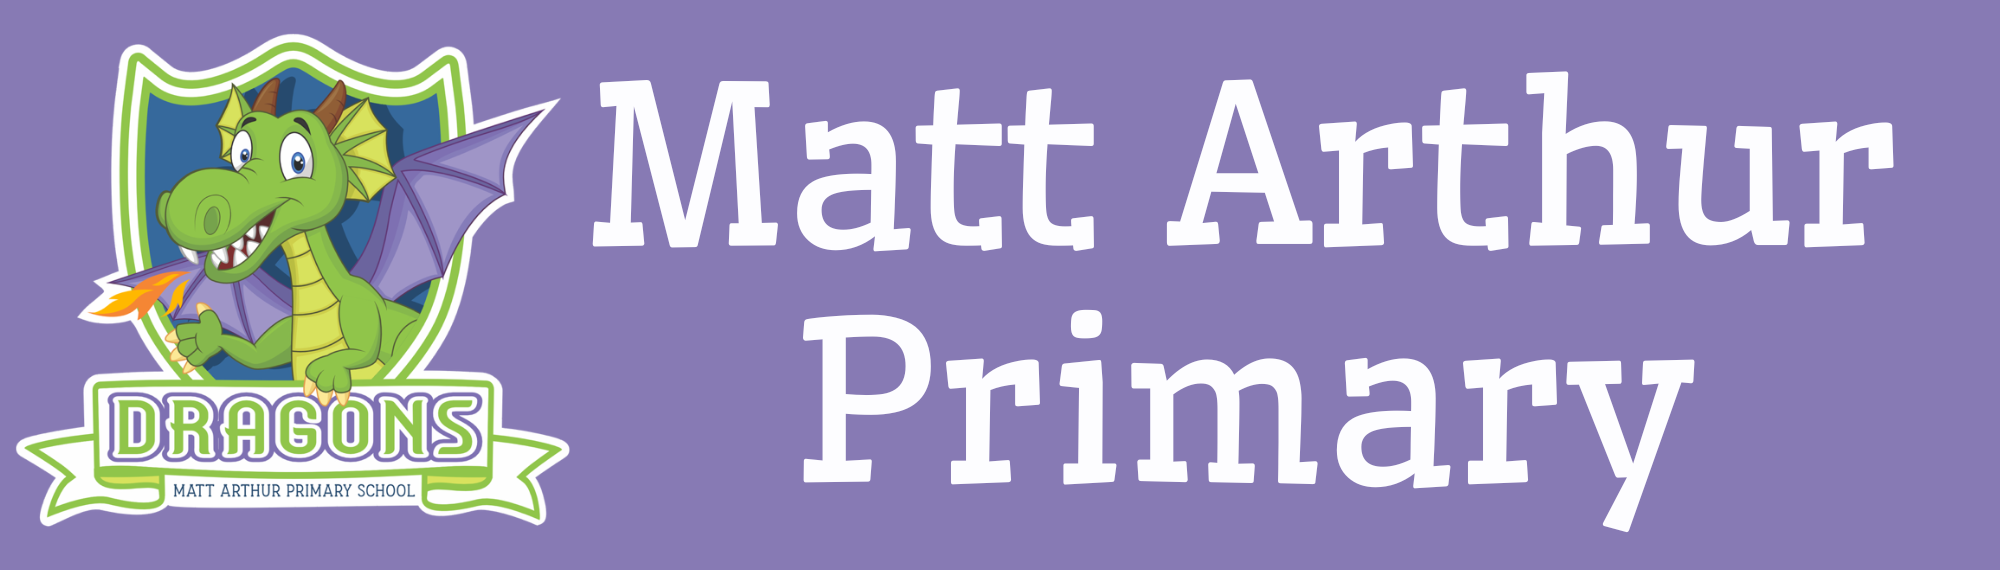 Matt Arthur Primary